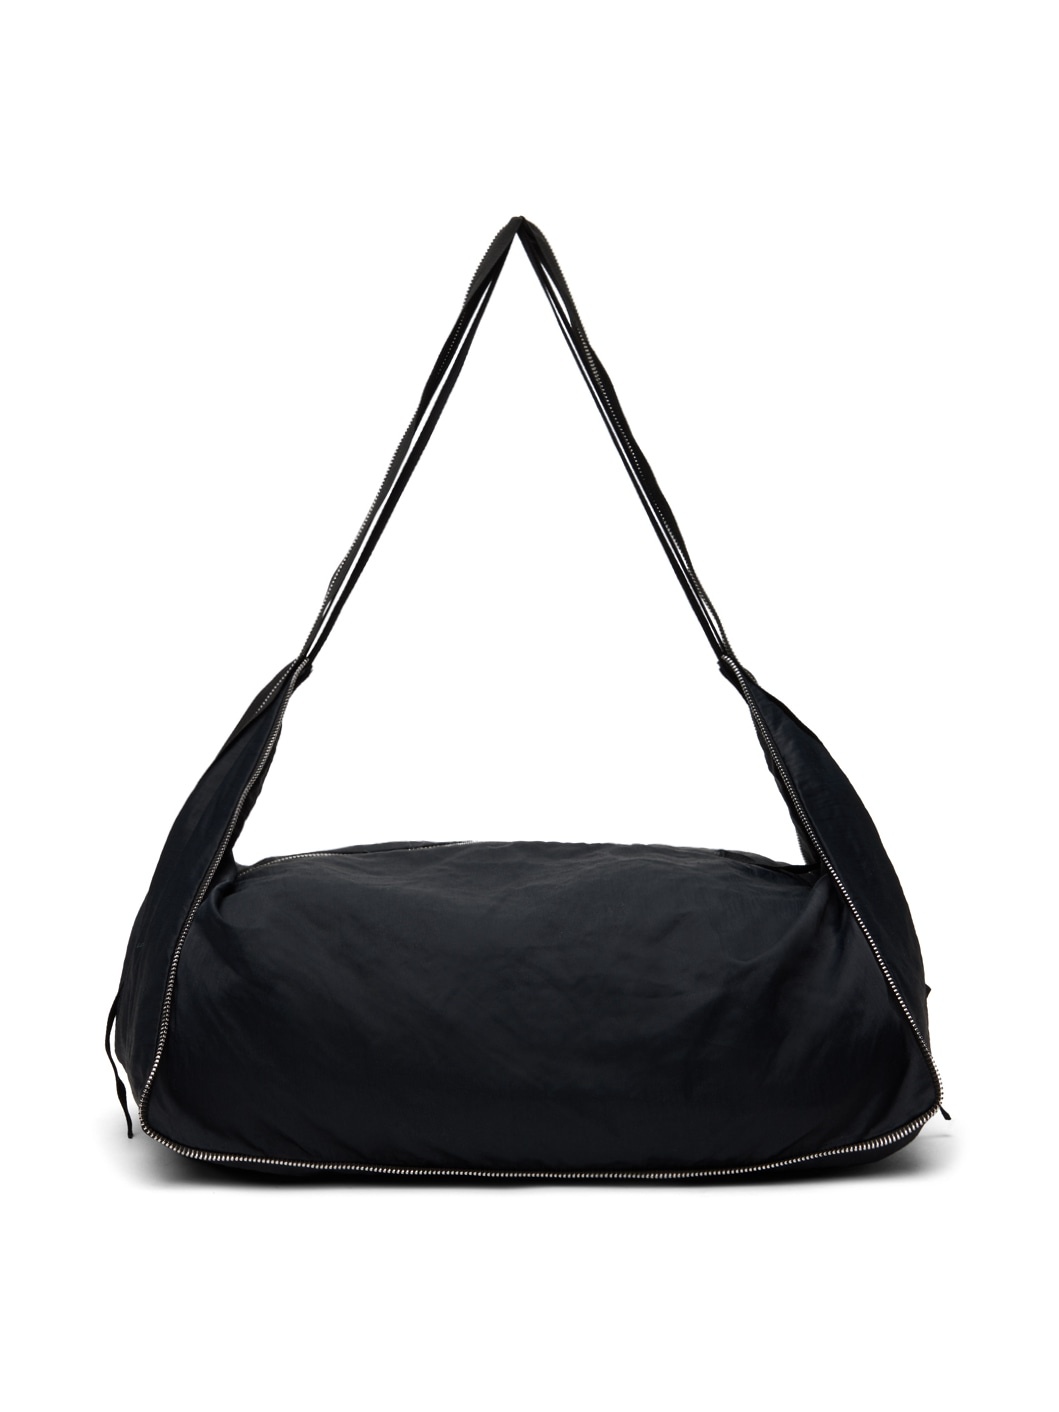 Black Cailleach Bag - 1